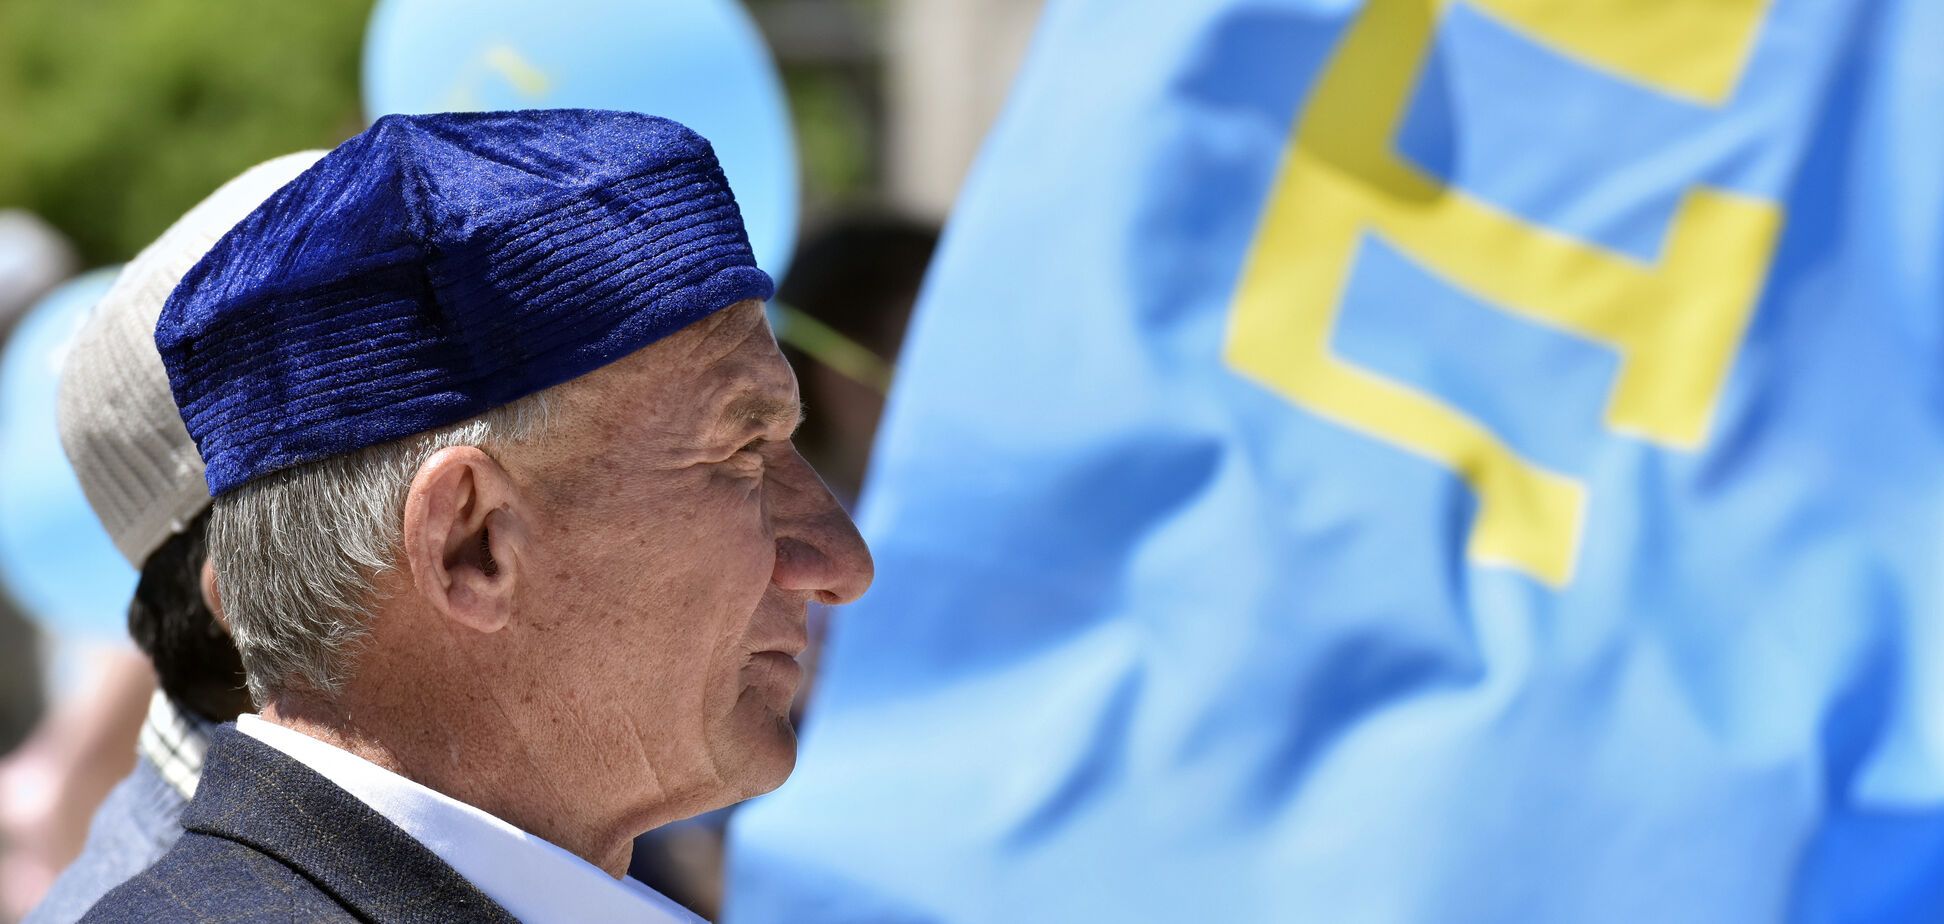 'Смерти подобно': у крымских татар сделали сильное заявление о борьбе с оккупантами